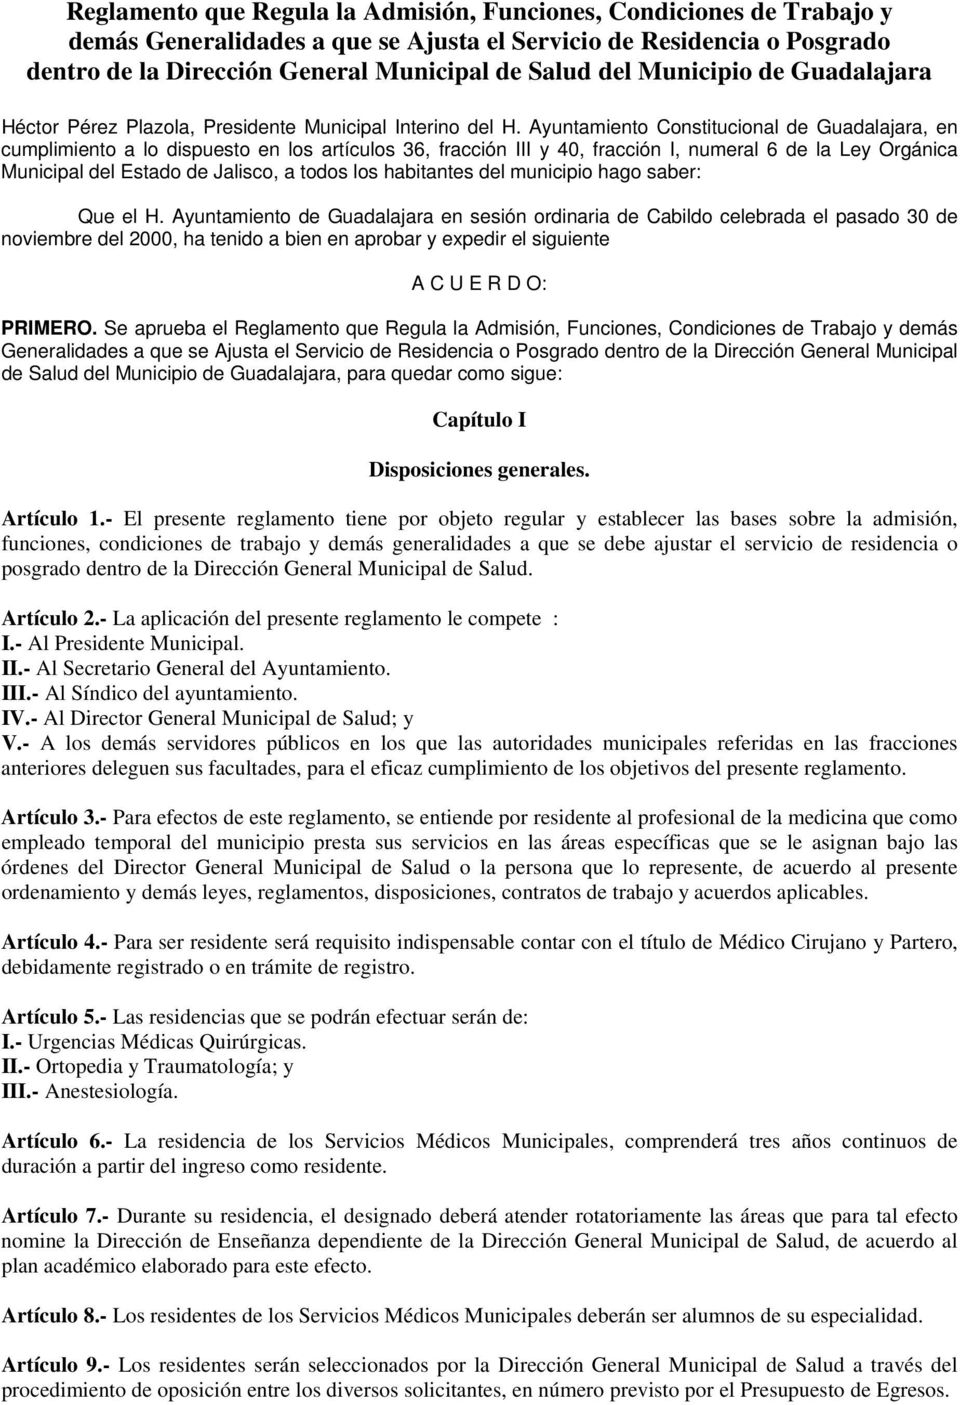 Ayuntamiento Constitucional de Guadalajara, en cumplimiento a lo dispuesto en los artículos 36, fracción III y 40, fracción I, numeral 6 de la Ley Orgánica Municipal del Estado de Jalisco, a todos